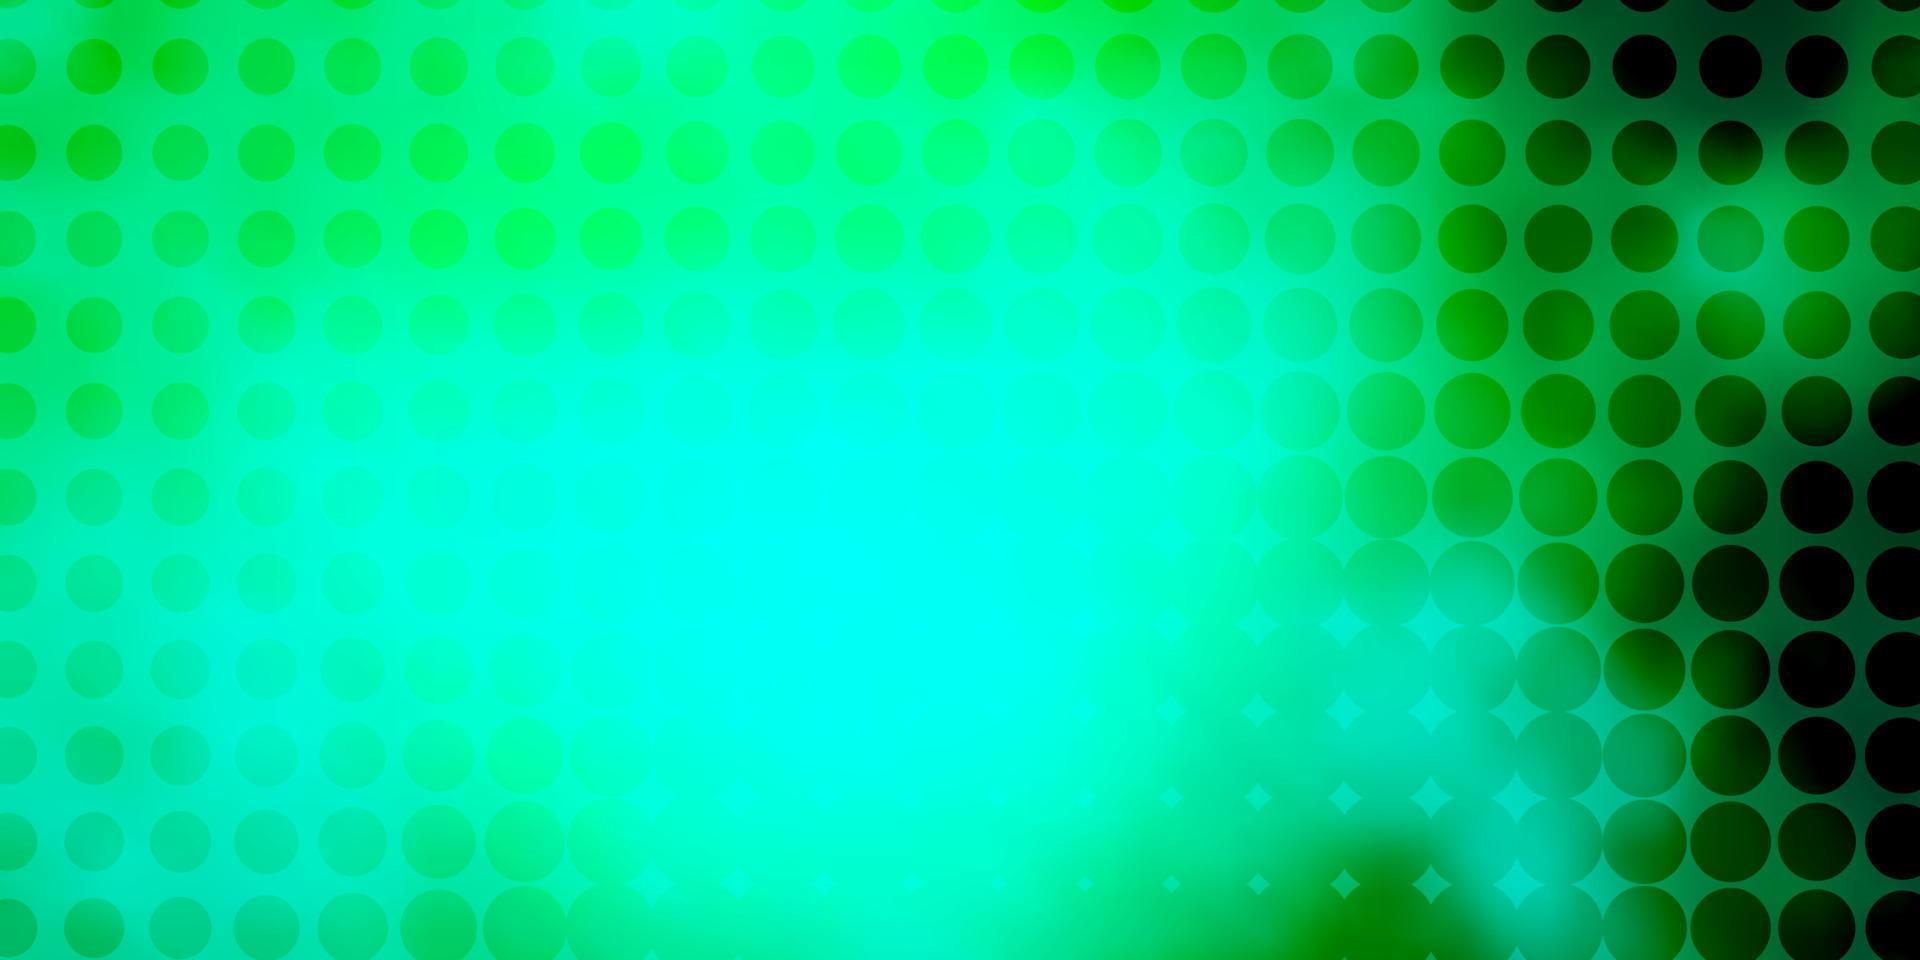 ljusgrön vektormall med cirklar. vektor